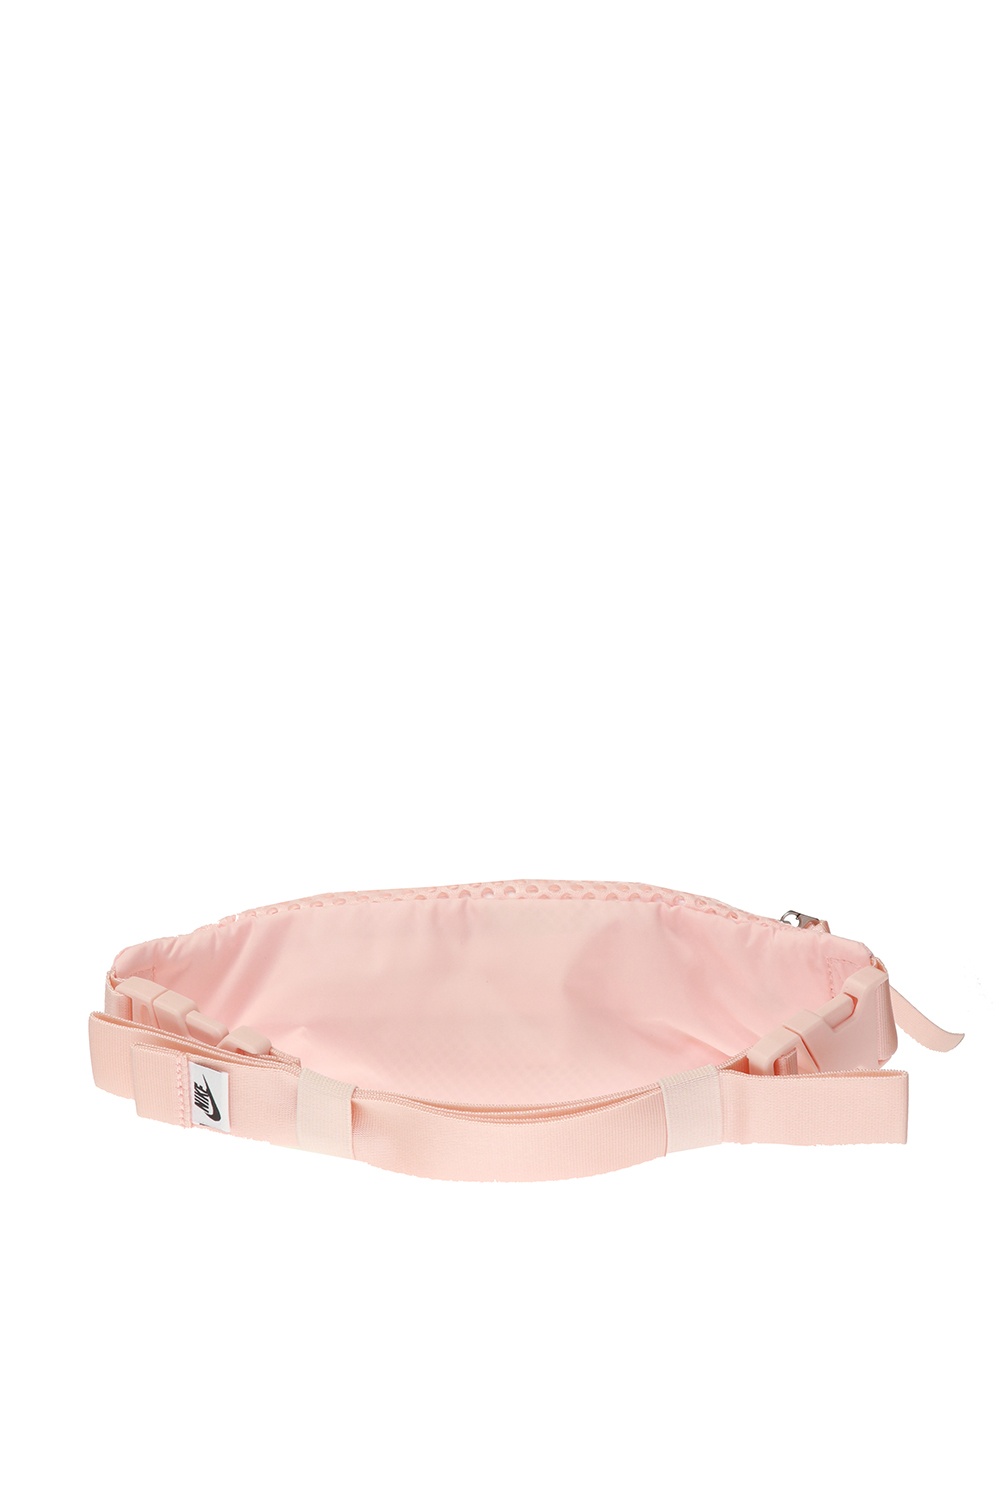 Nike Crossbody Waist Bag Fanny Pack Belt Festival Neon Green Pink  Fluorescent